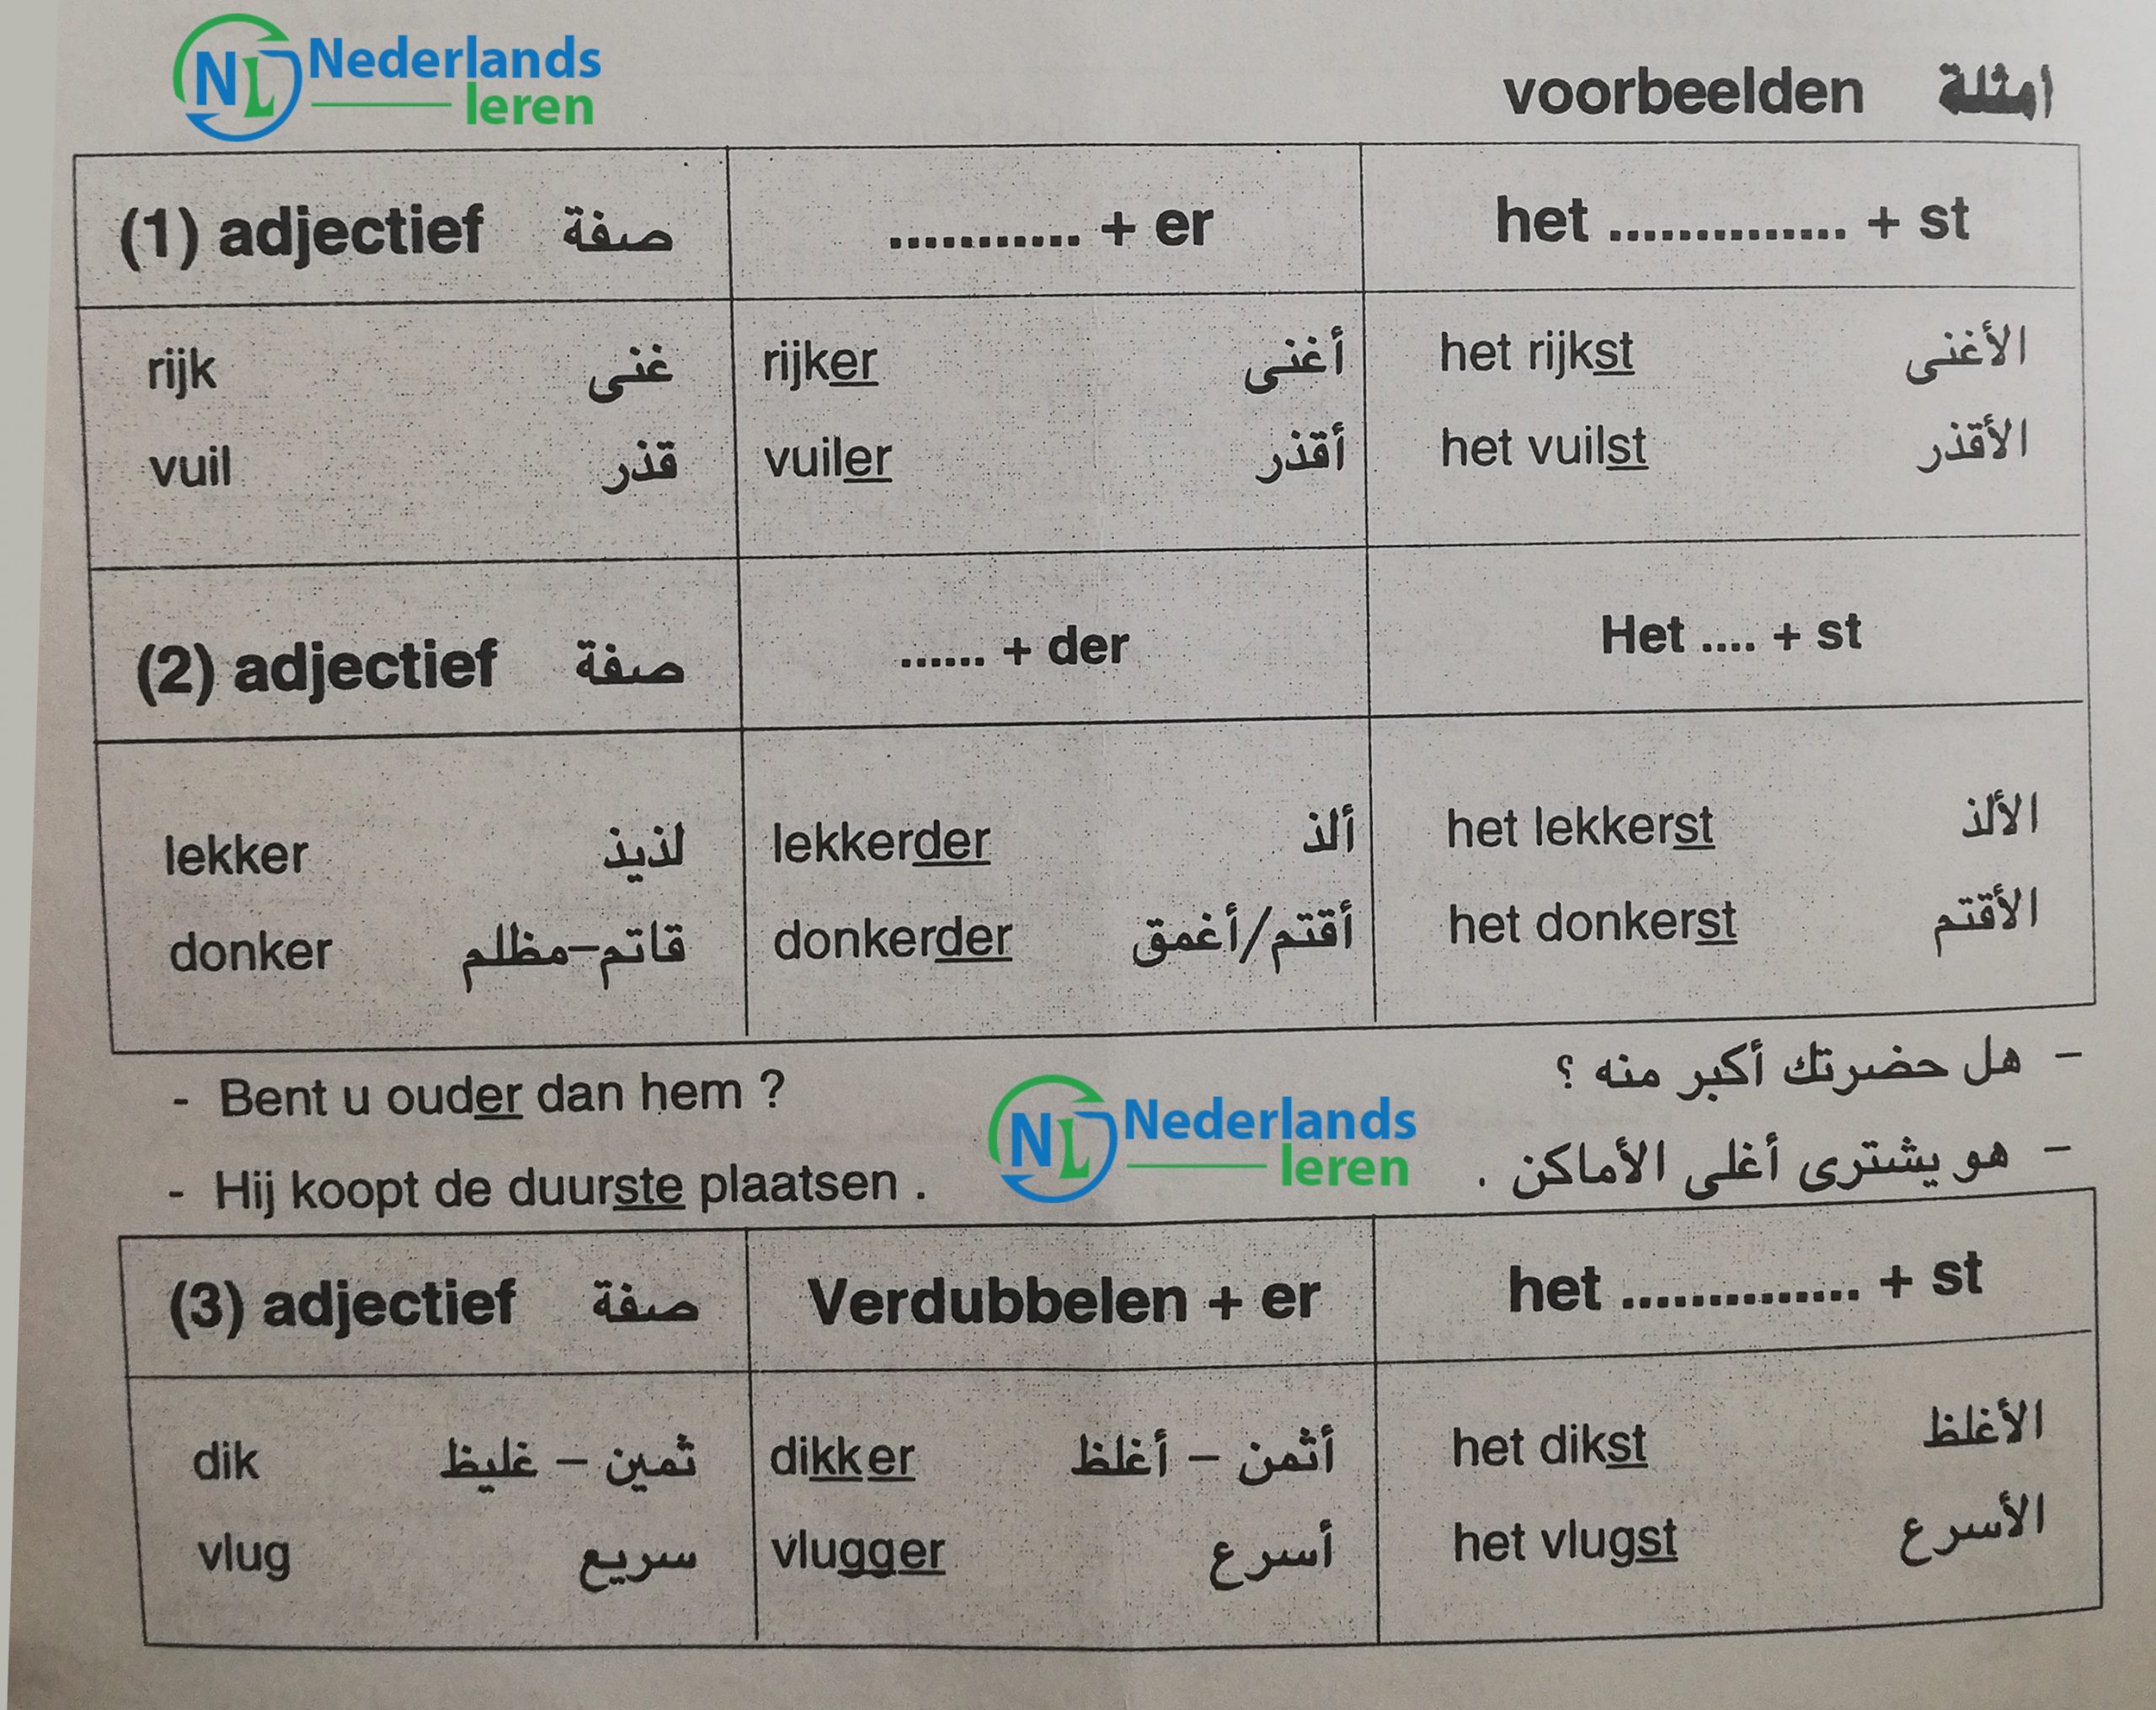 شرح ومثال على التصغير في اللغة الهولندية Trappen van vergelijking